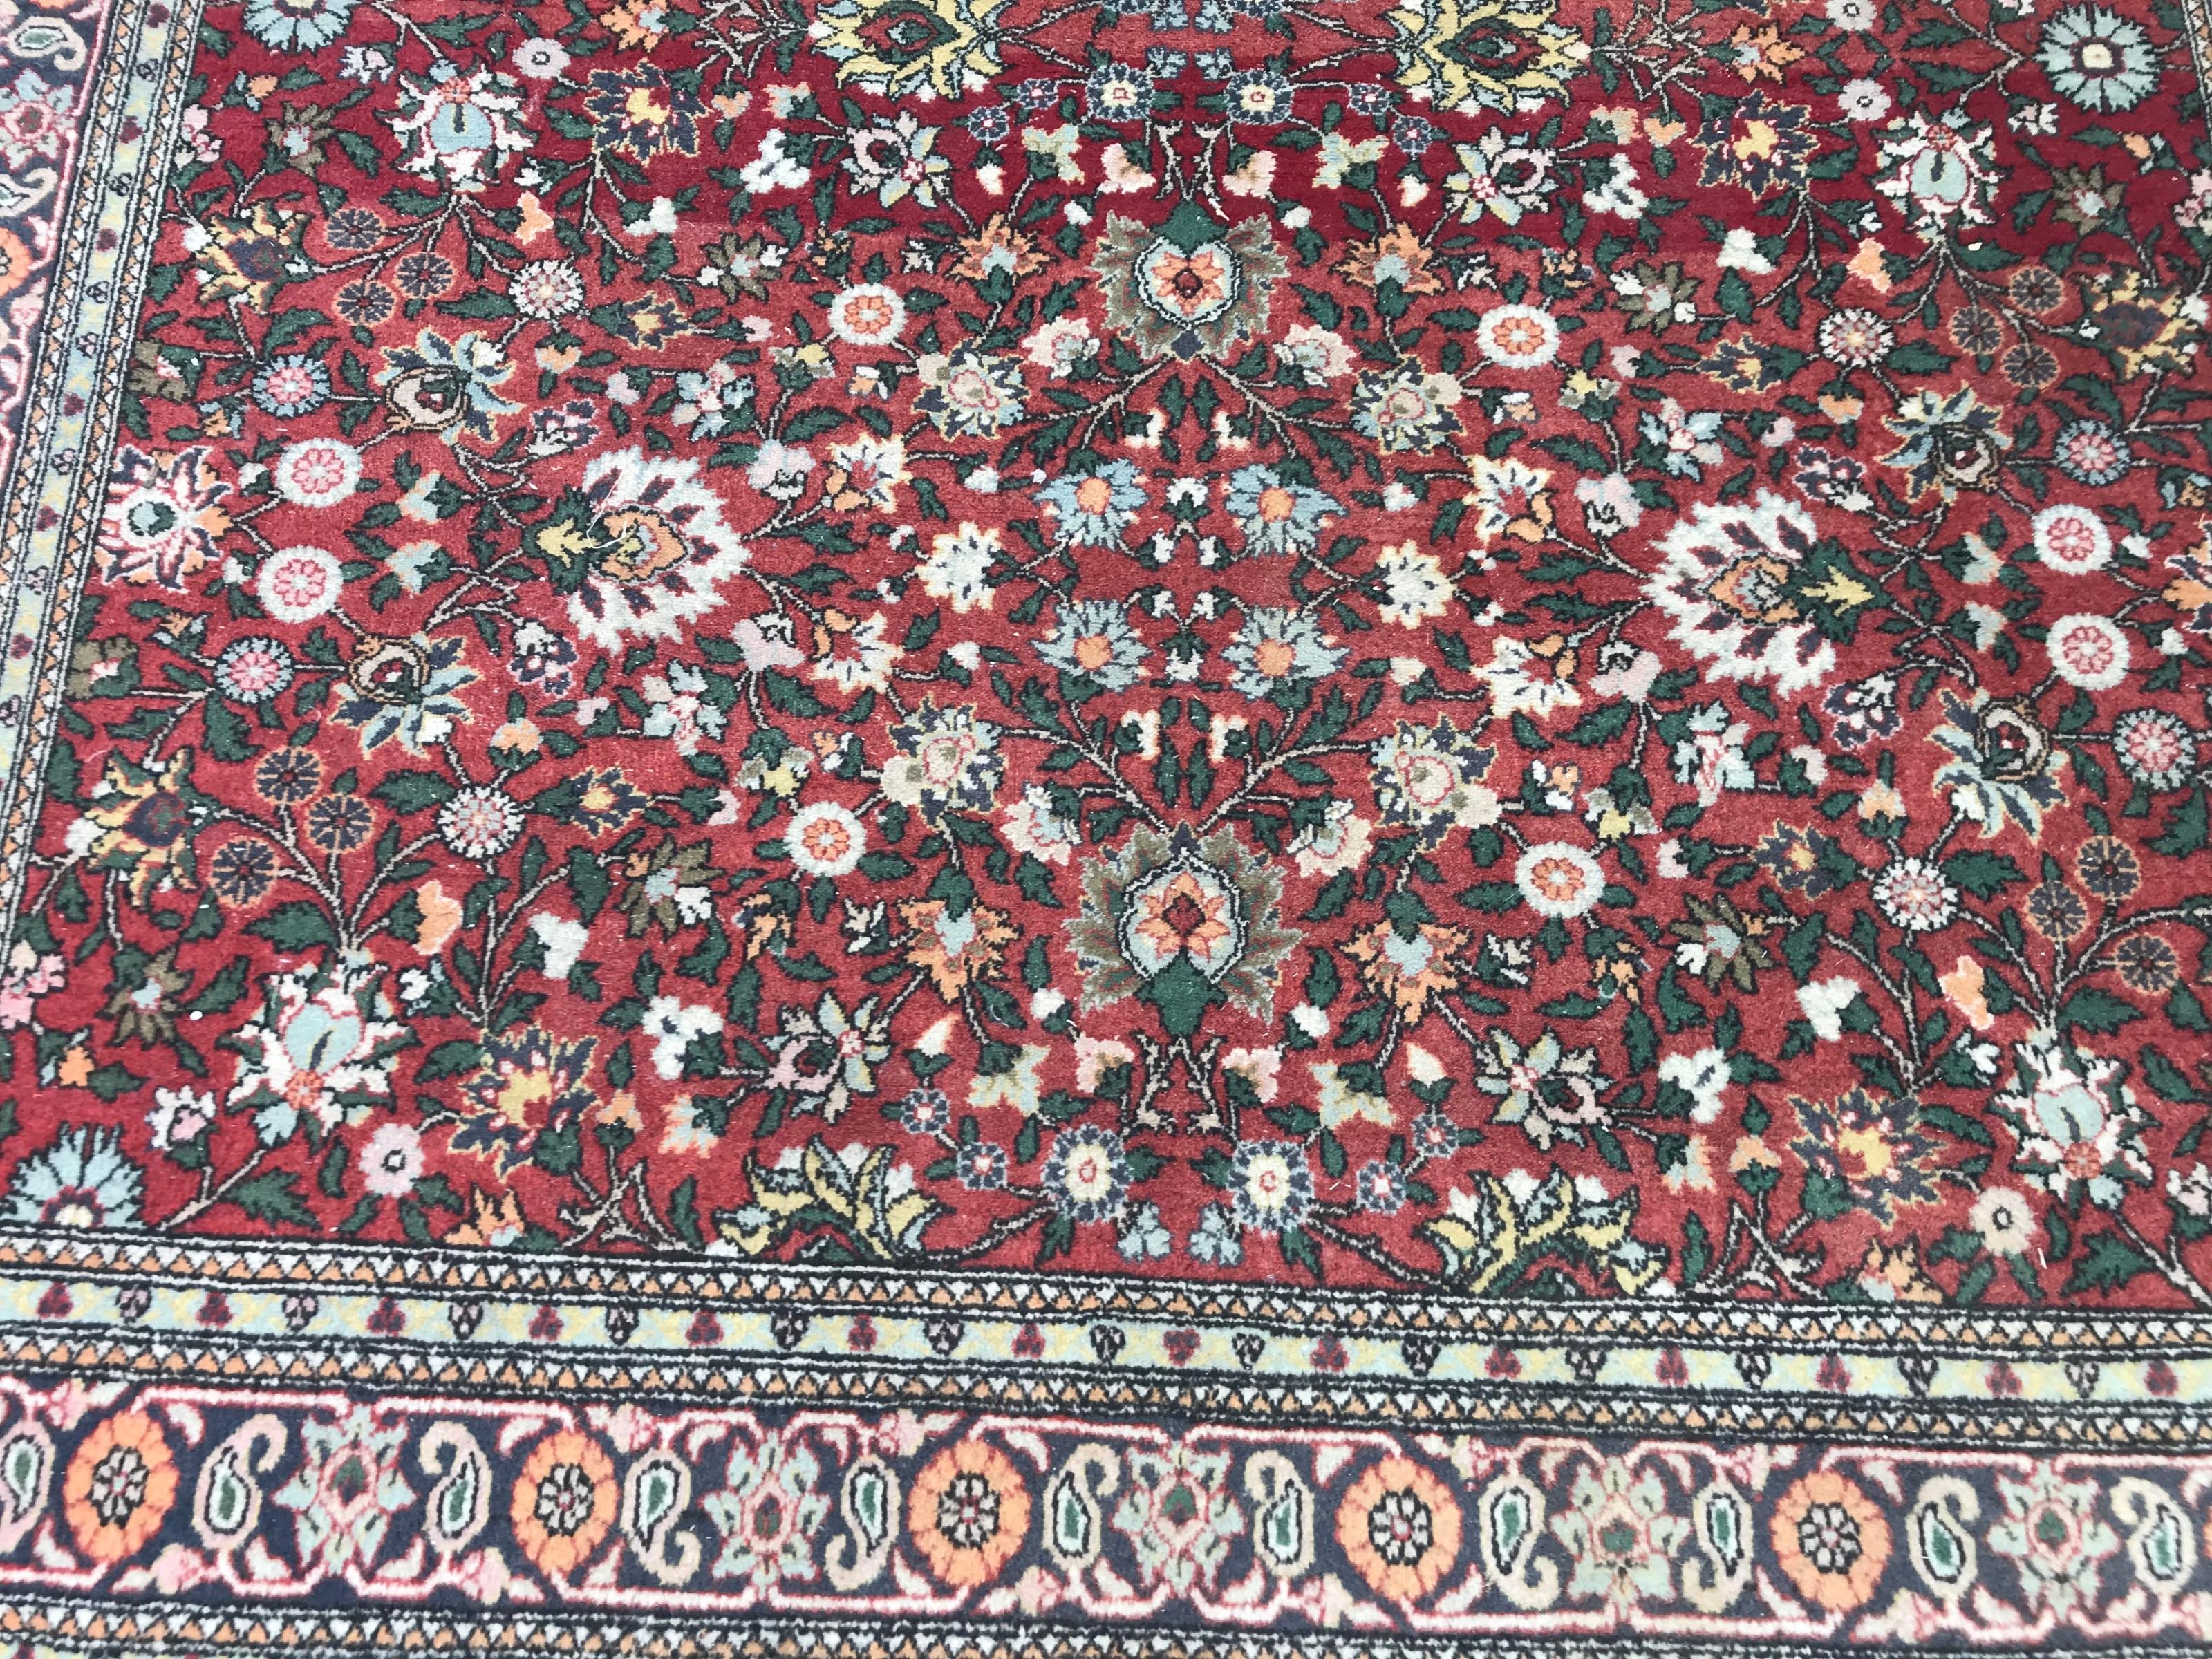 Sehr schöner türkischer Teppich mit schönem Blumenmuster und schönen Farben mit Orange, Blau und Grün, fein handgeknüpft mit Wollsamt auf Baumwollbasis.

✨✨✨
